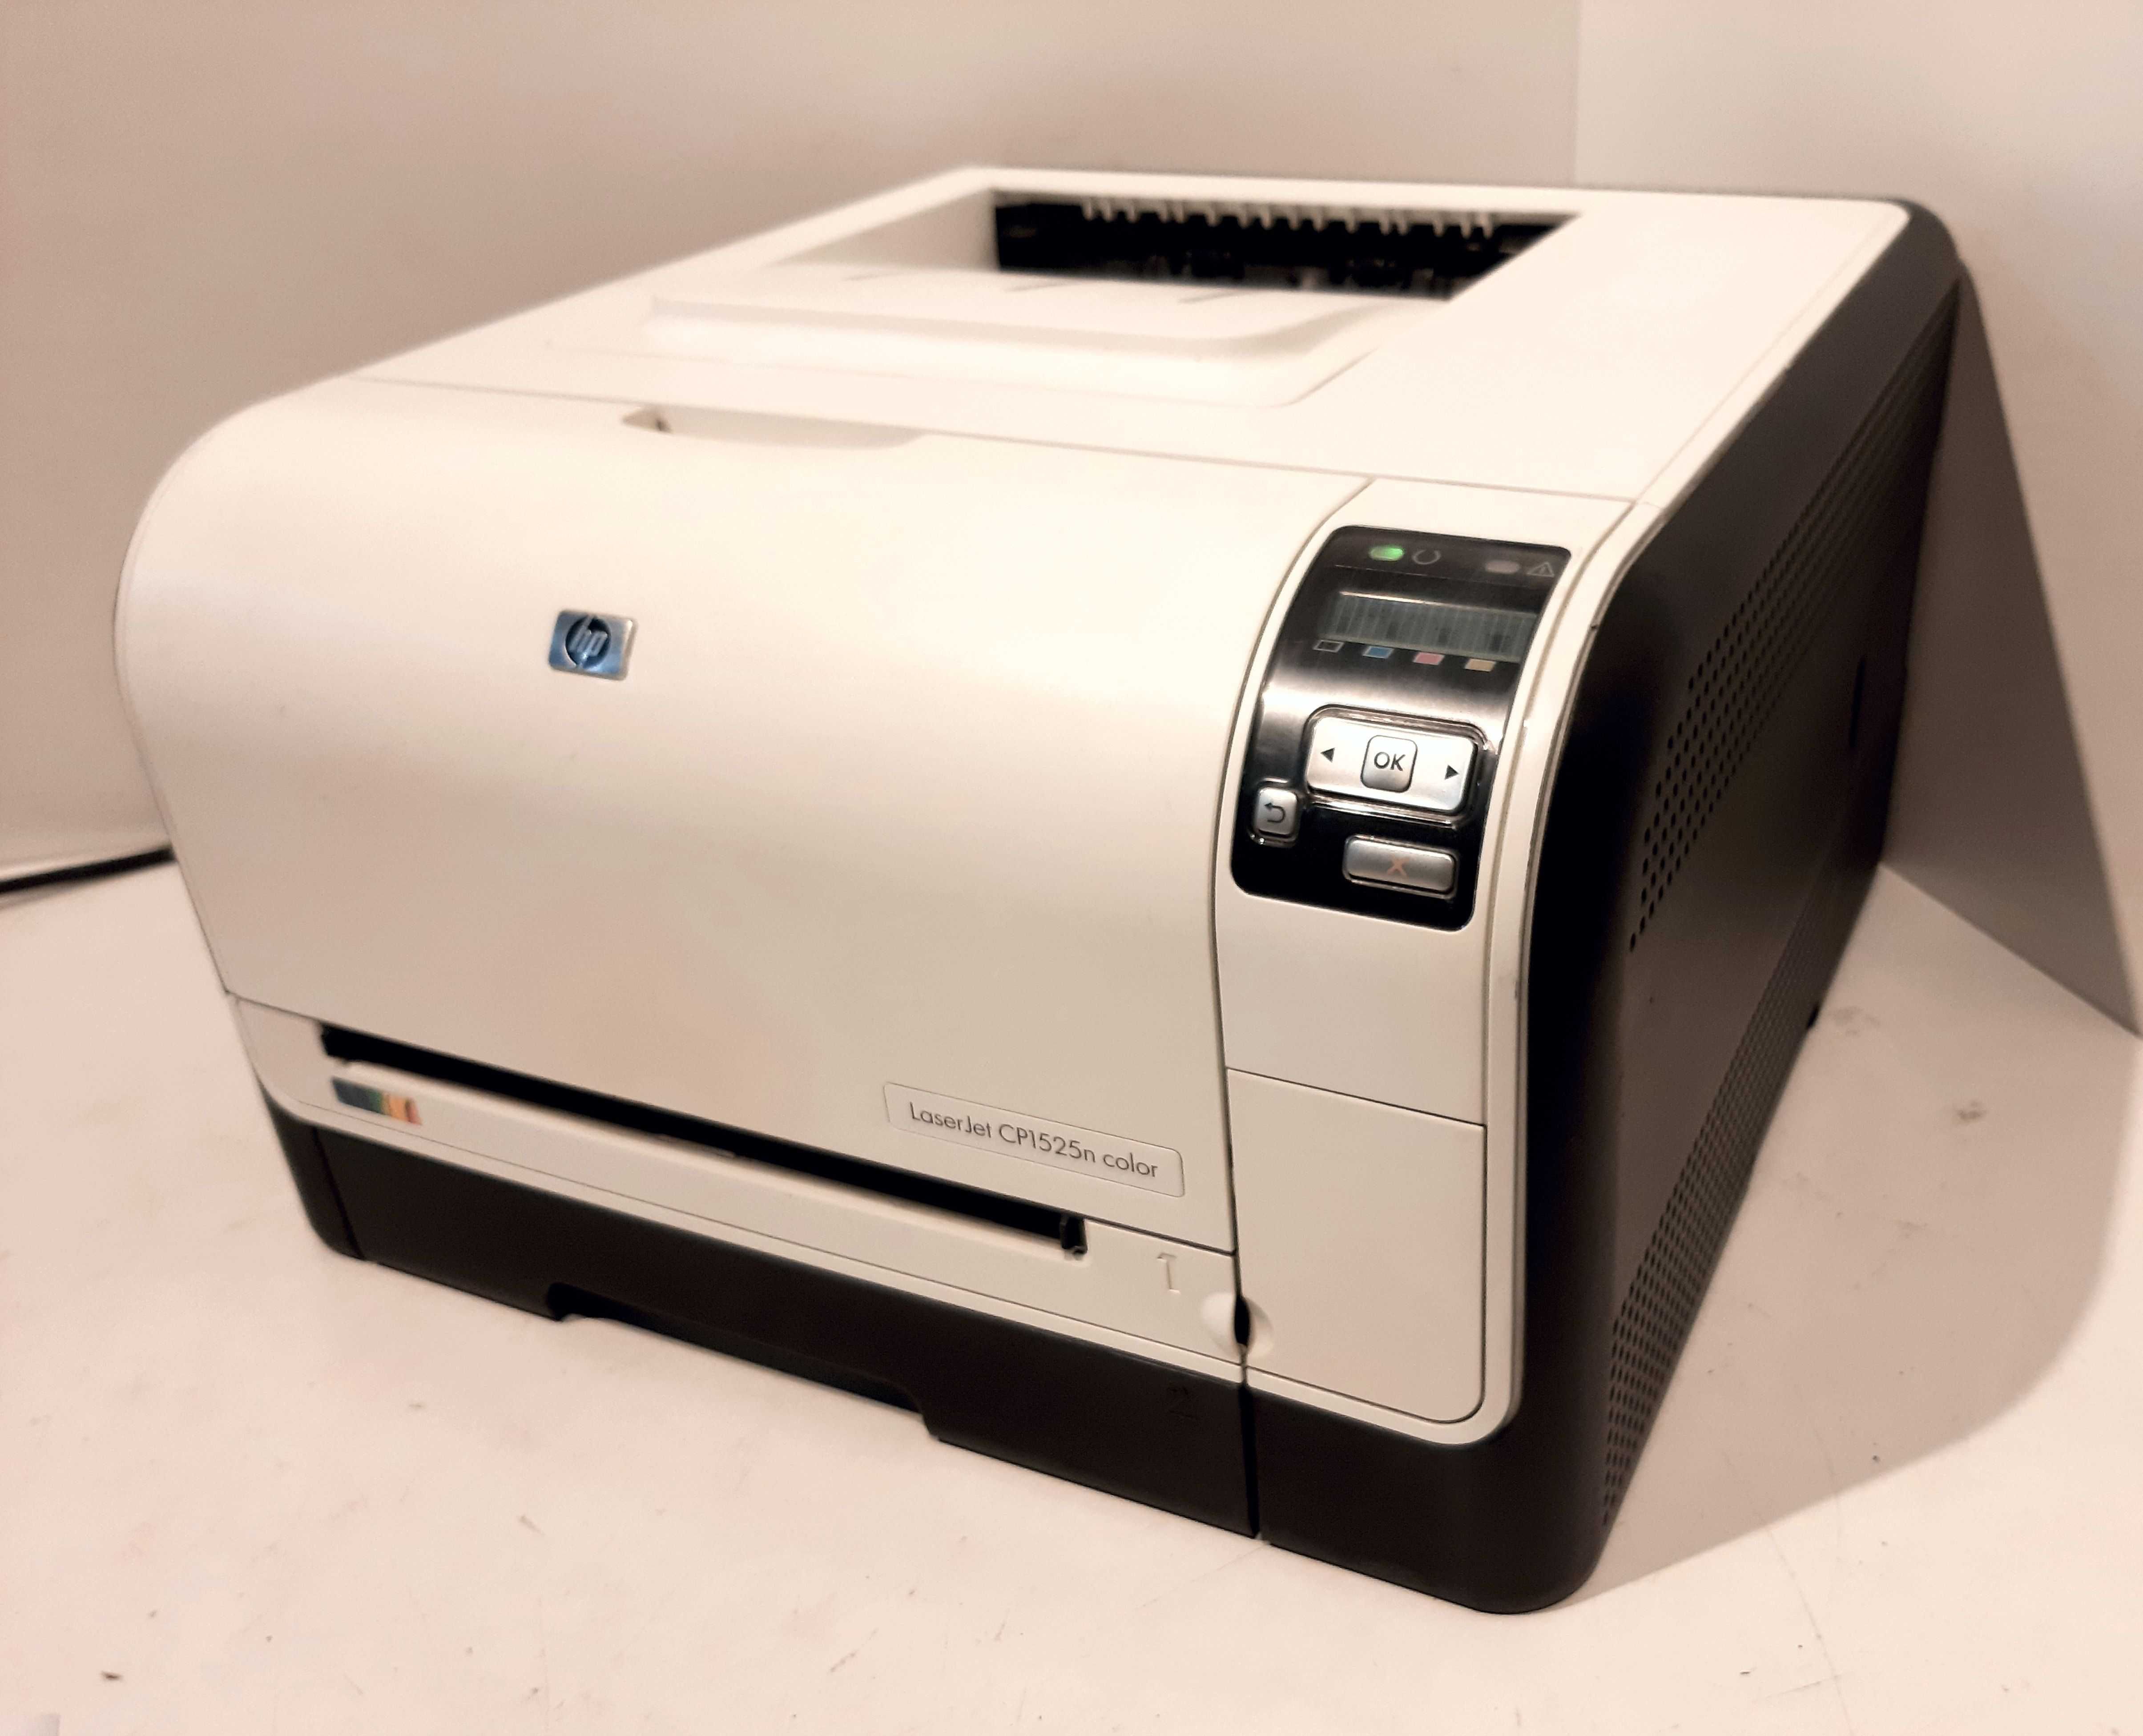 Принтер лазерный HP Color LaserJet Pro CP1525n, цветн., A4